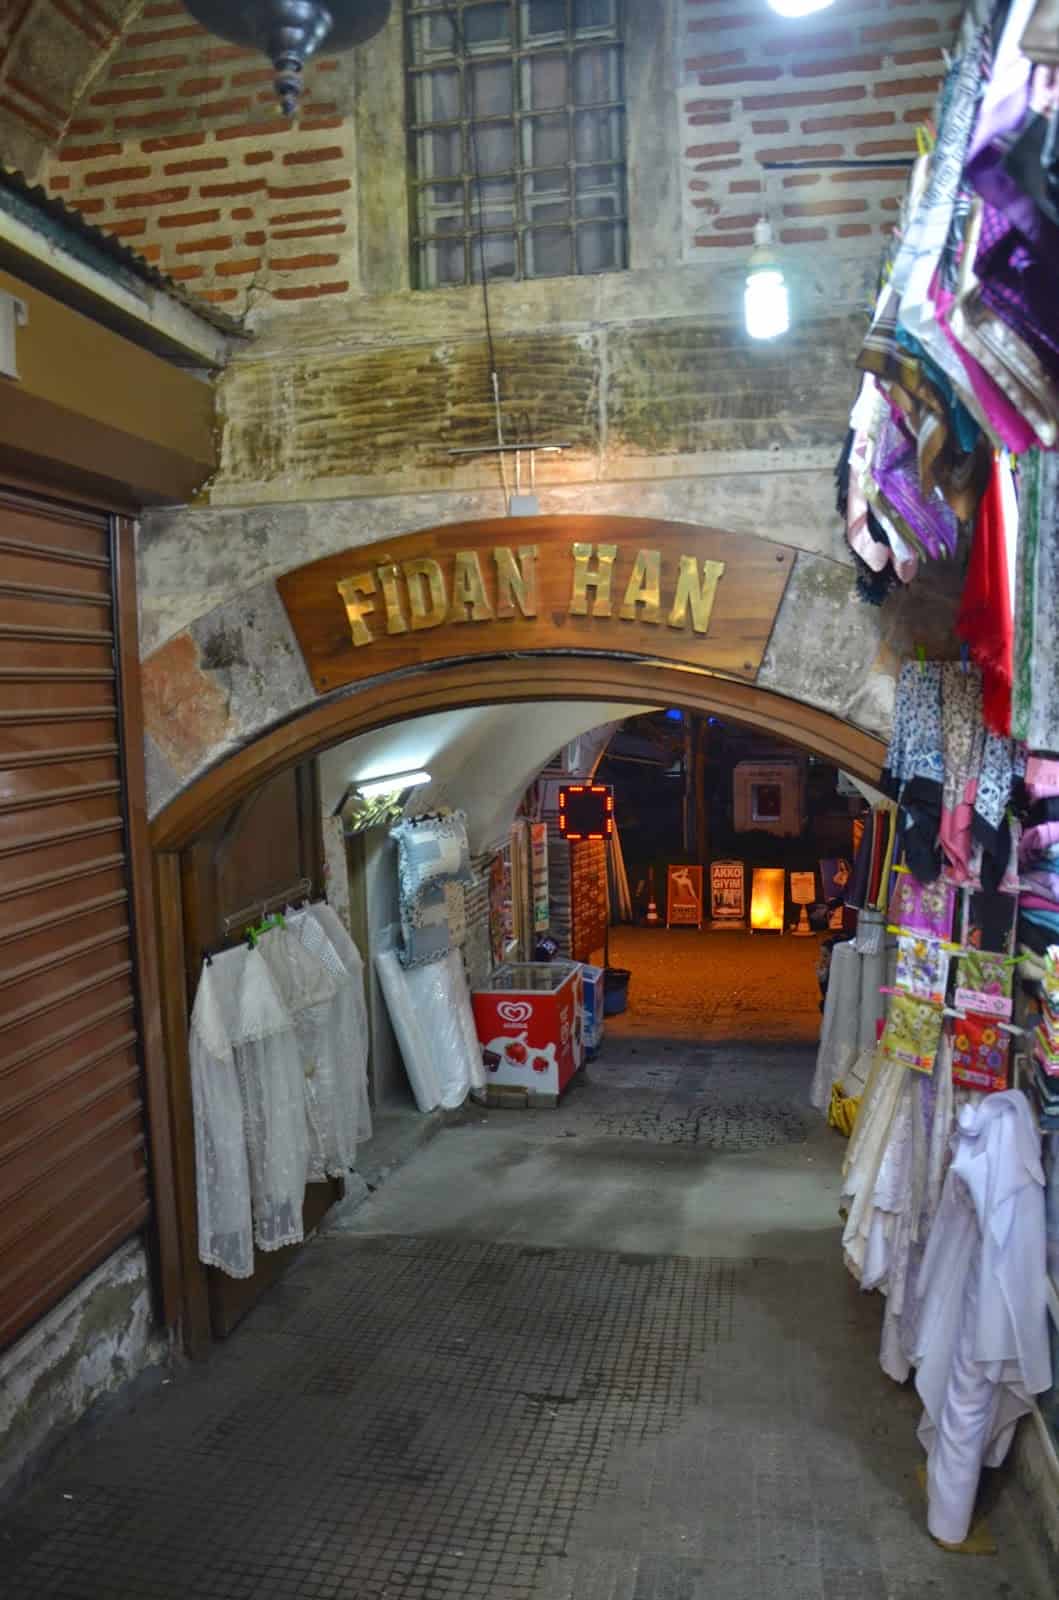 Entrance to Fidan Han in Bursa, Turkey